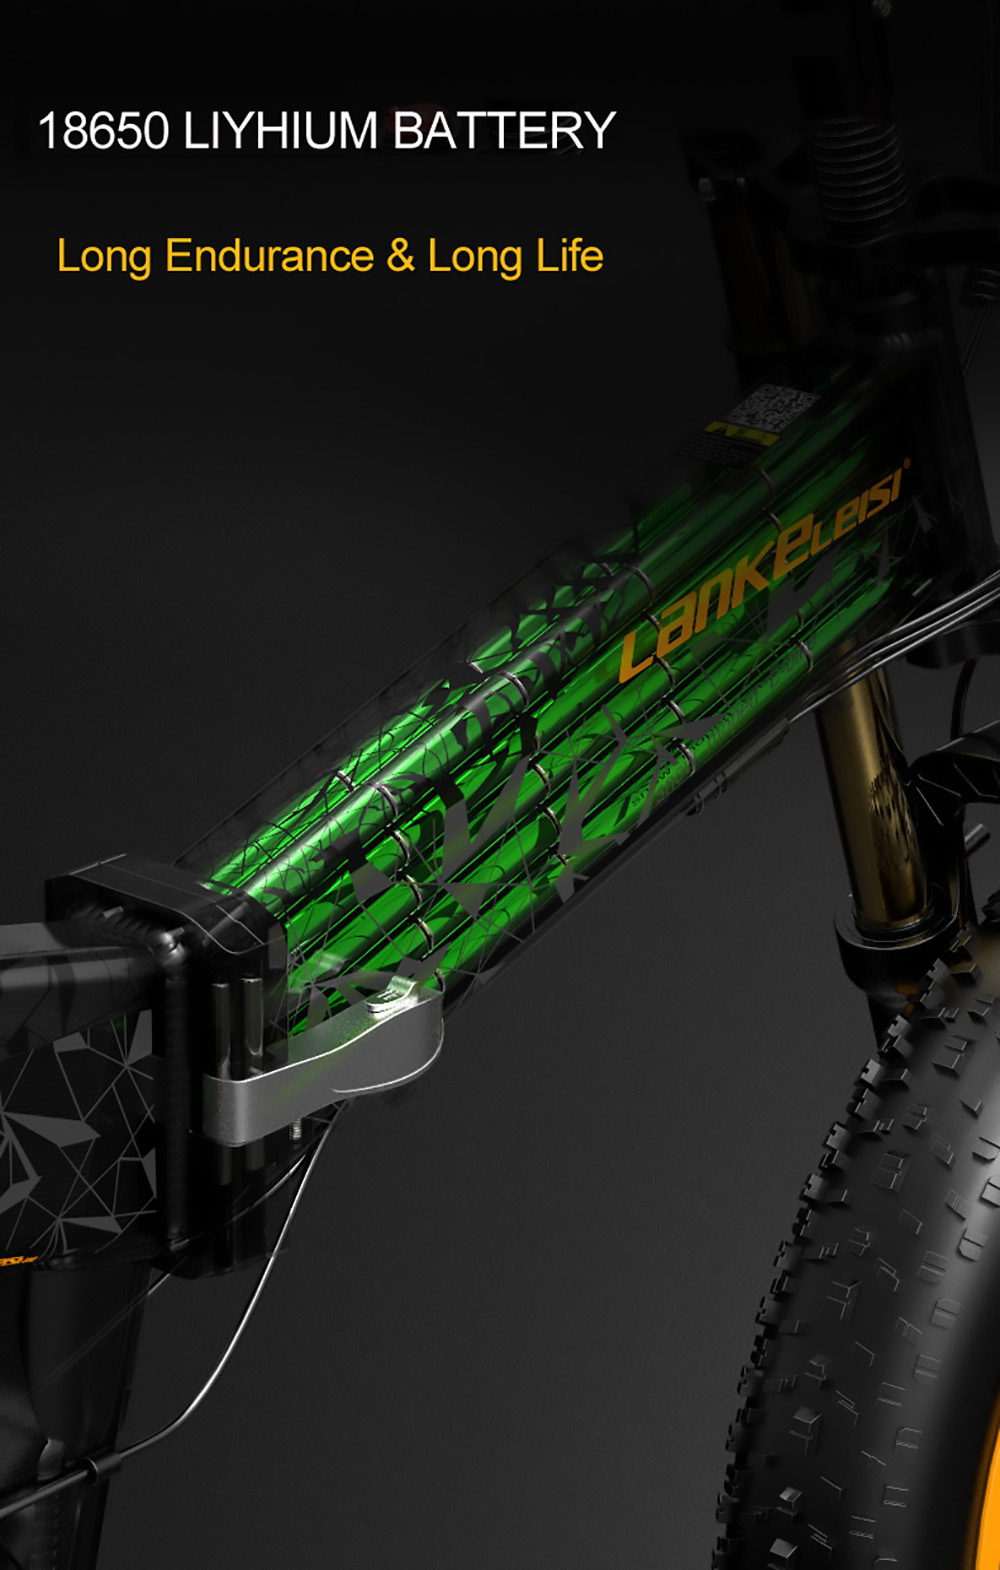 Ηλεκτρικό ποδήλατο LANKELEISI X3000 Plus 20 ιντσών 1000W 43Km/h 17,5AH - Γκρι